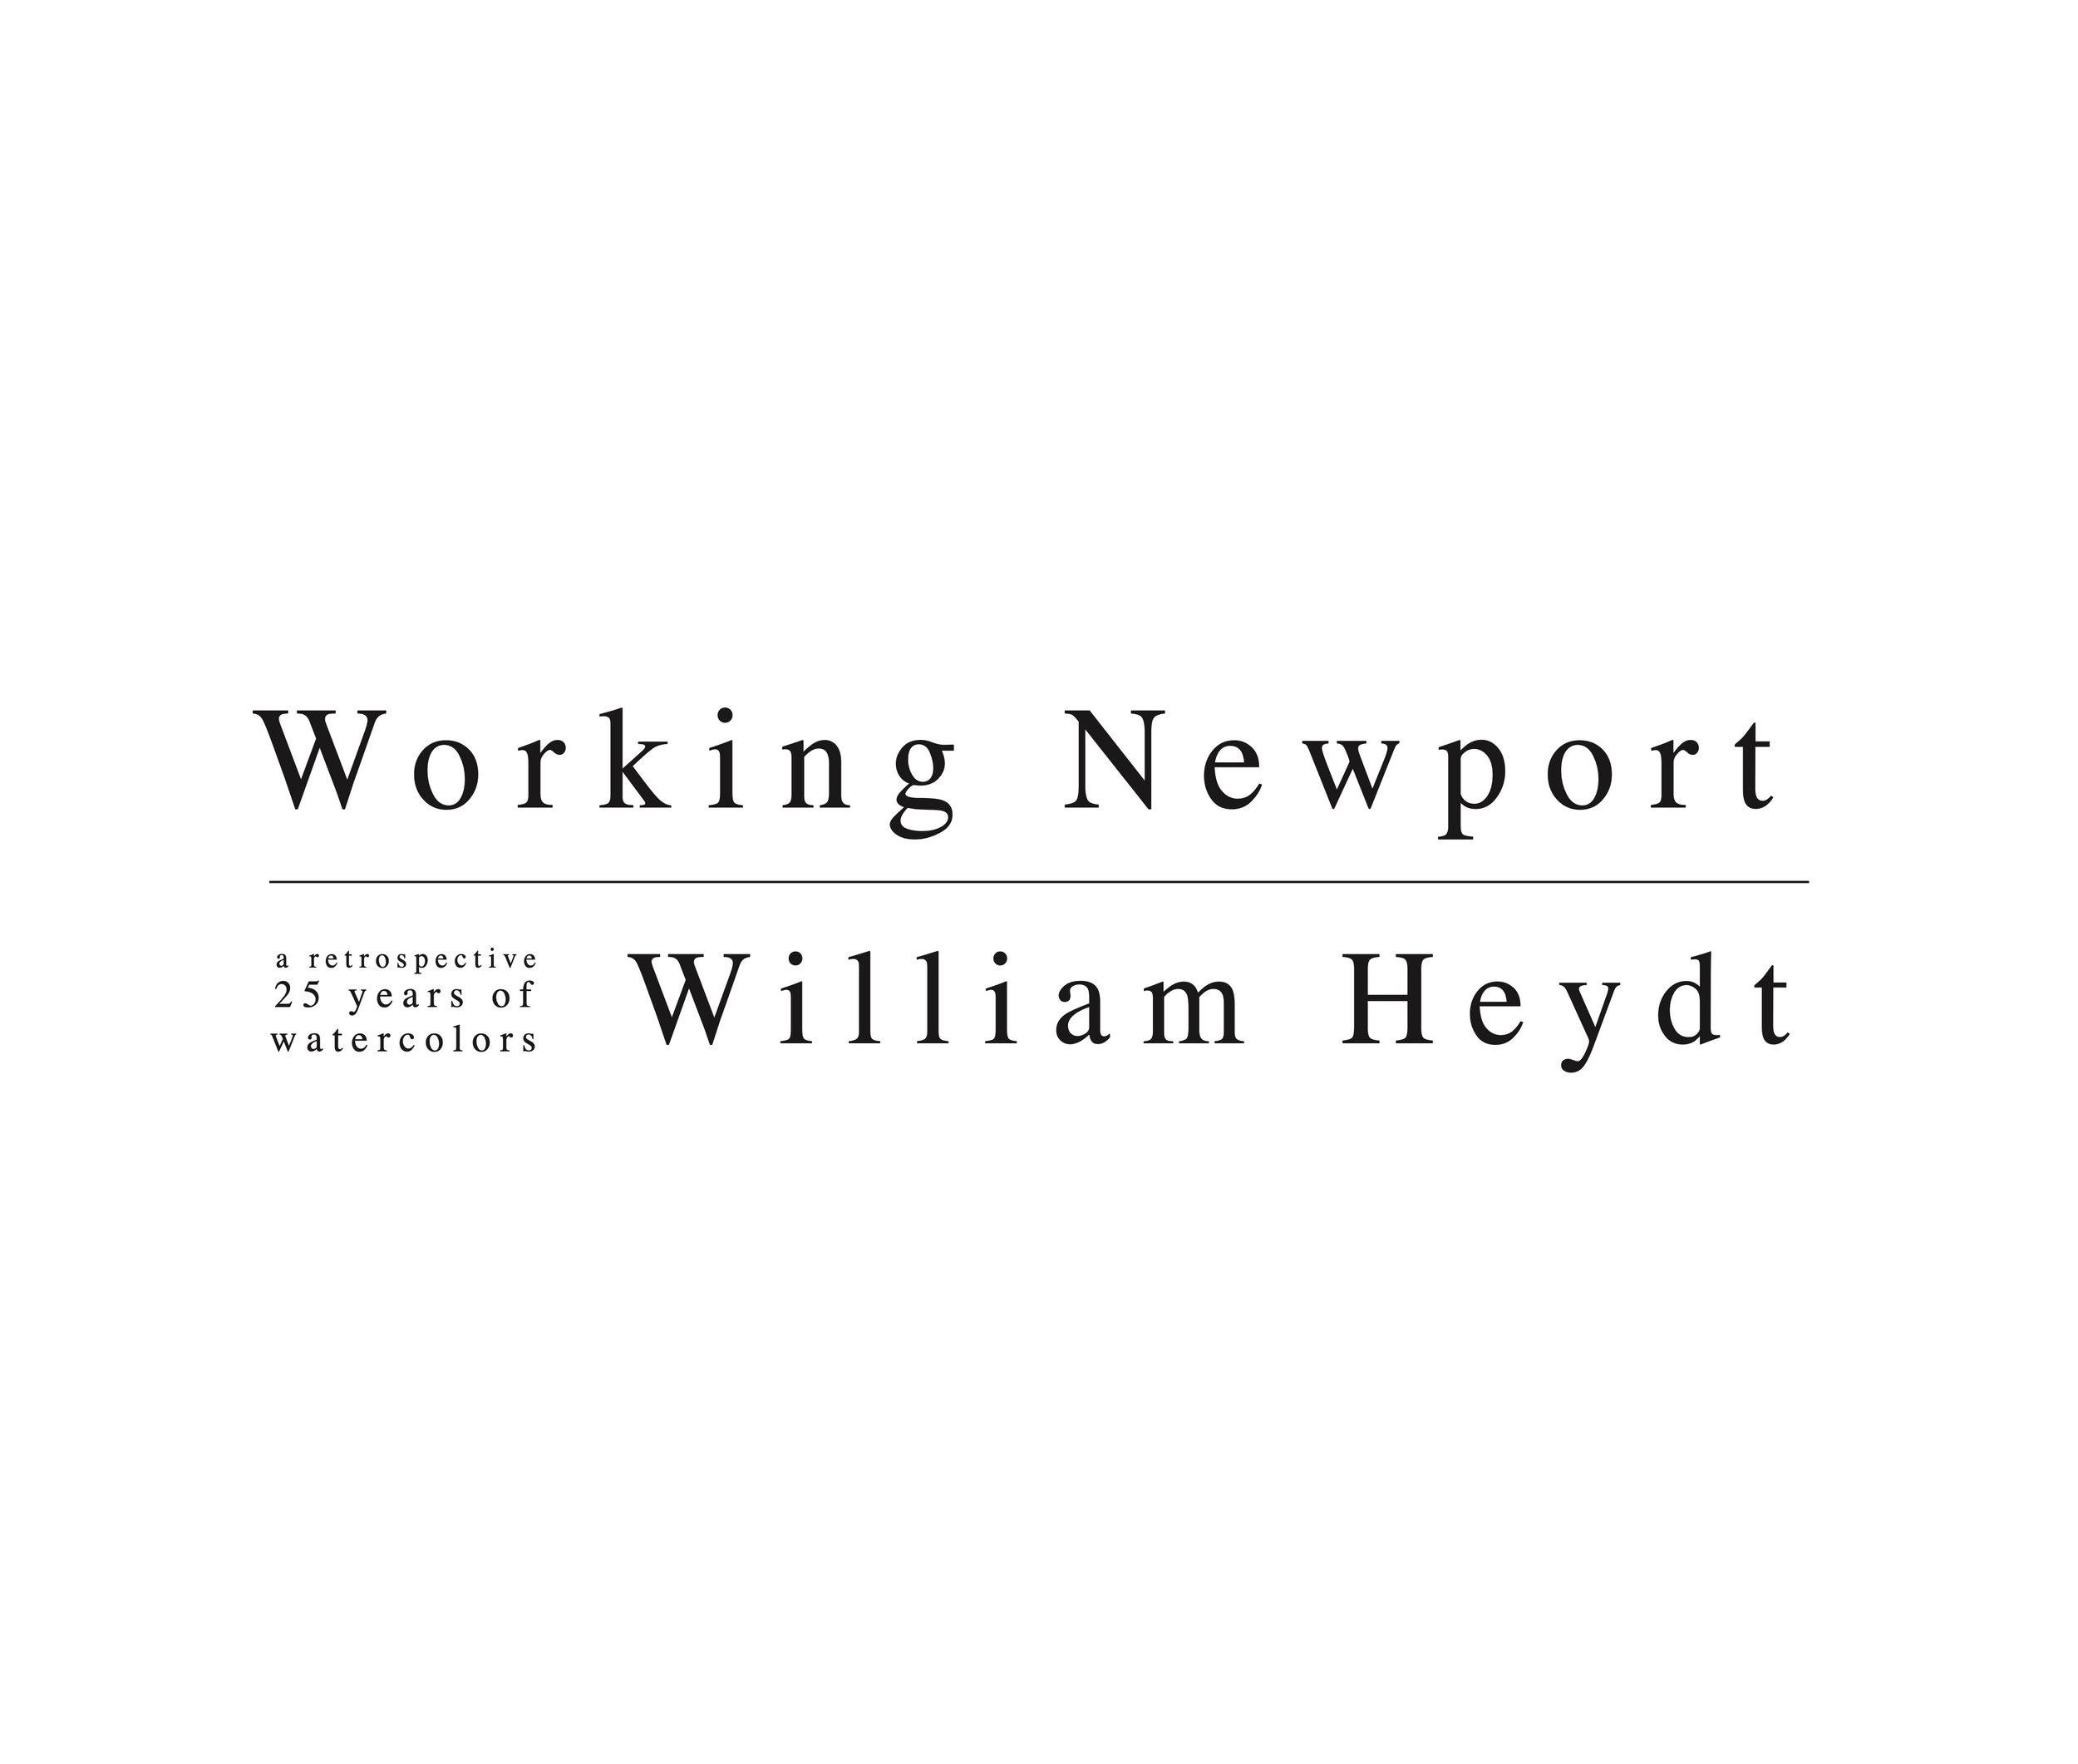 Working Newport V1 12 26 2021-highdef 102.jpeg